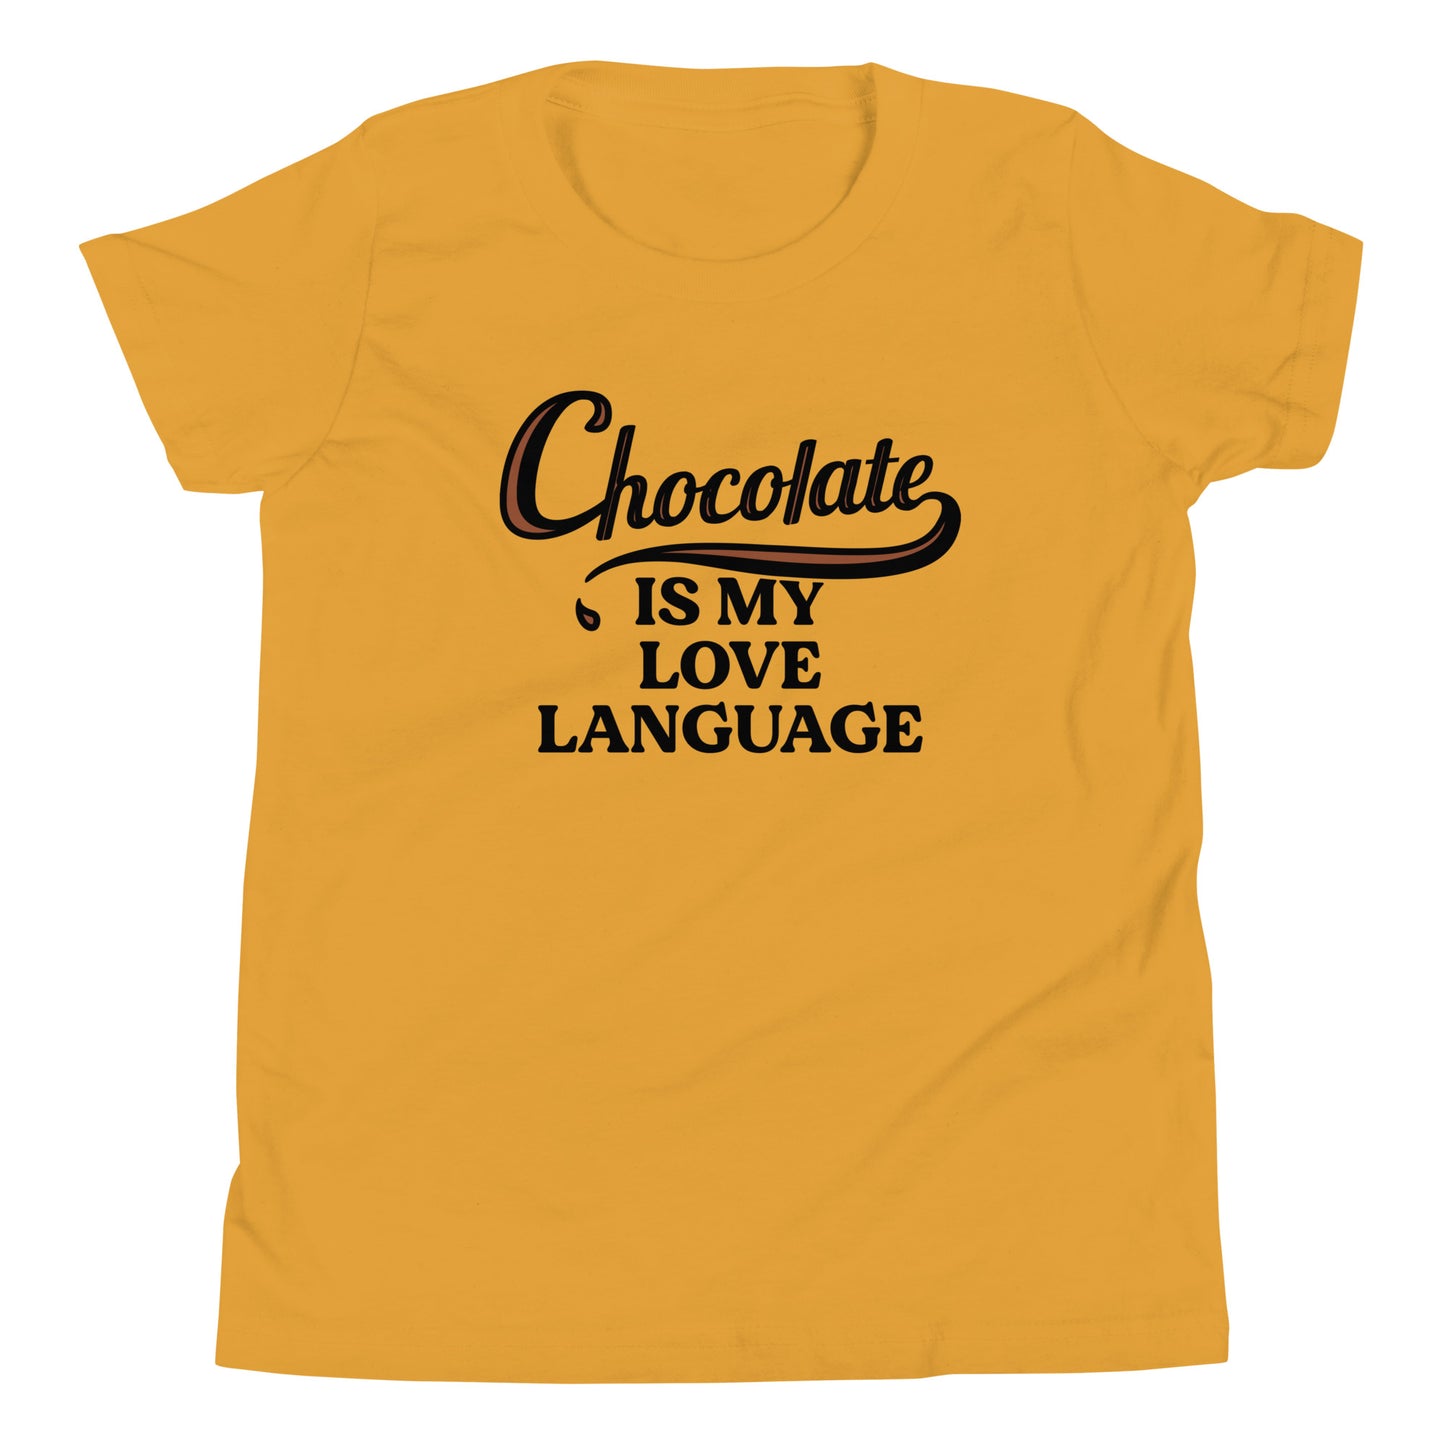 Chocolate Is My Love Language Kid's Youth Tee